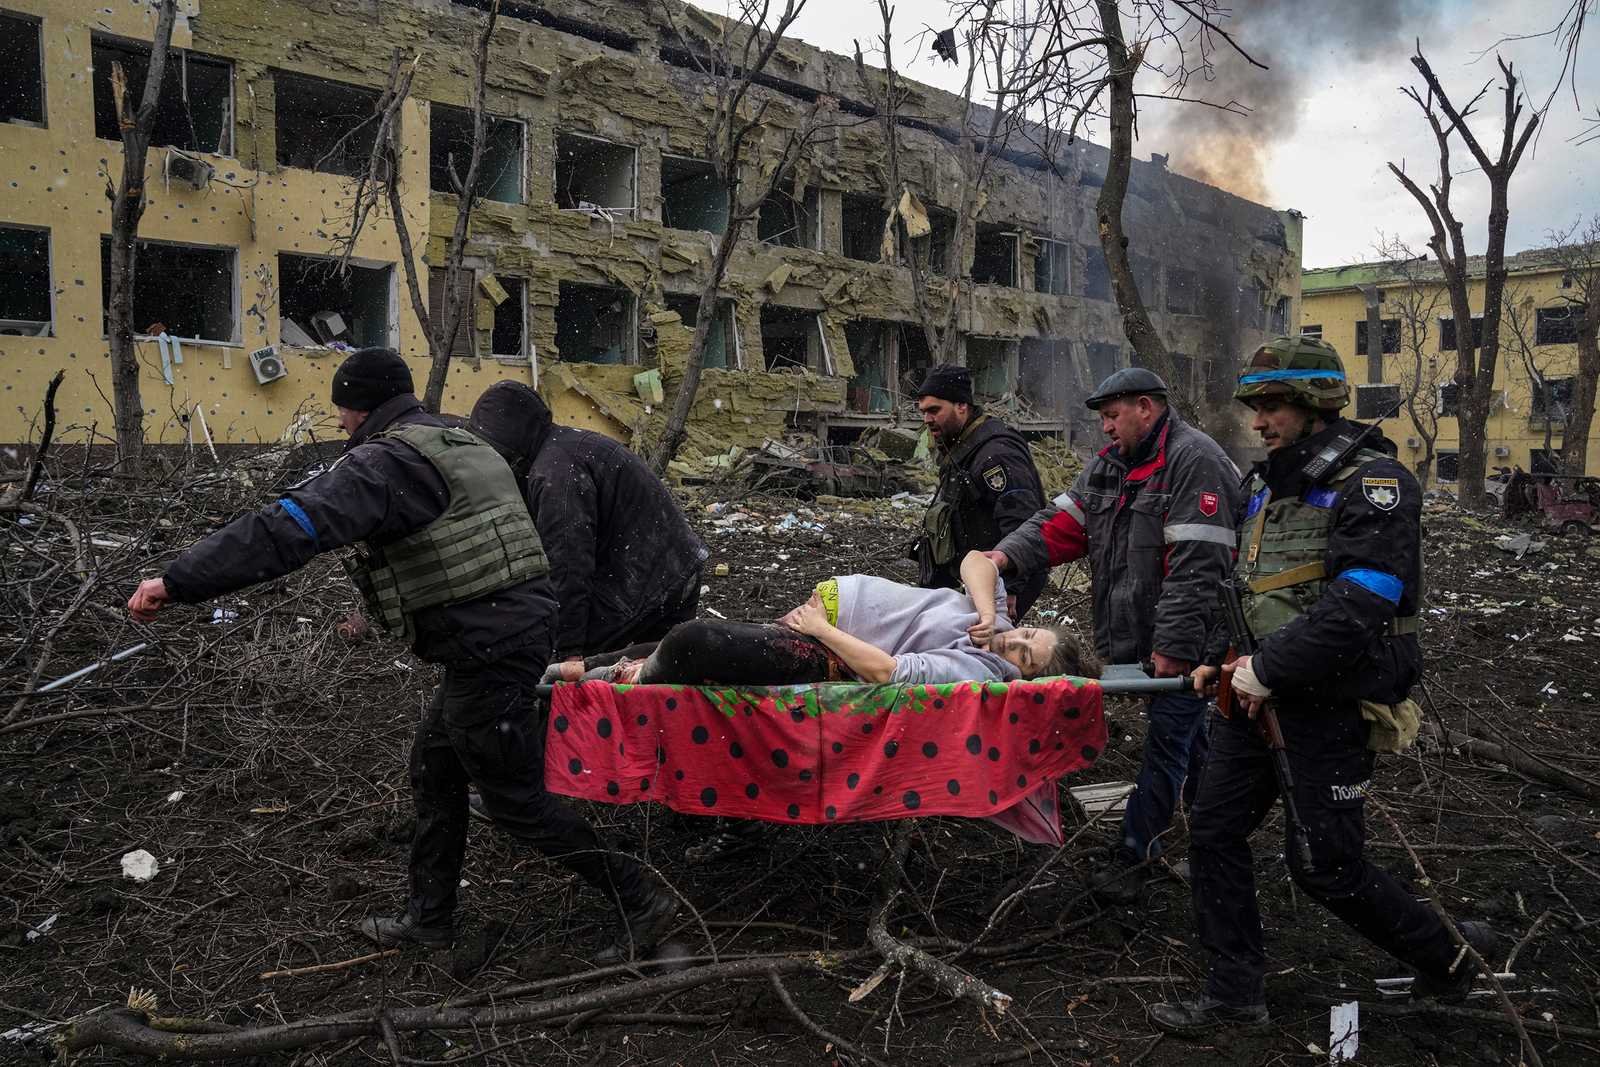 ukrainian-emergency-employees-police-evacuate-injured.jpg